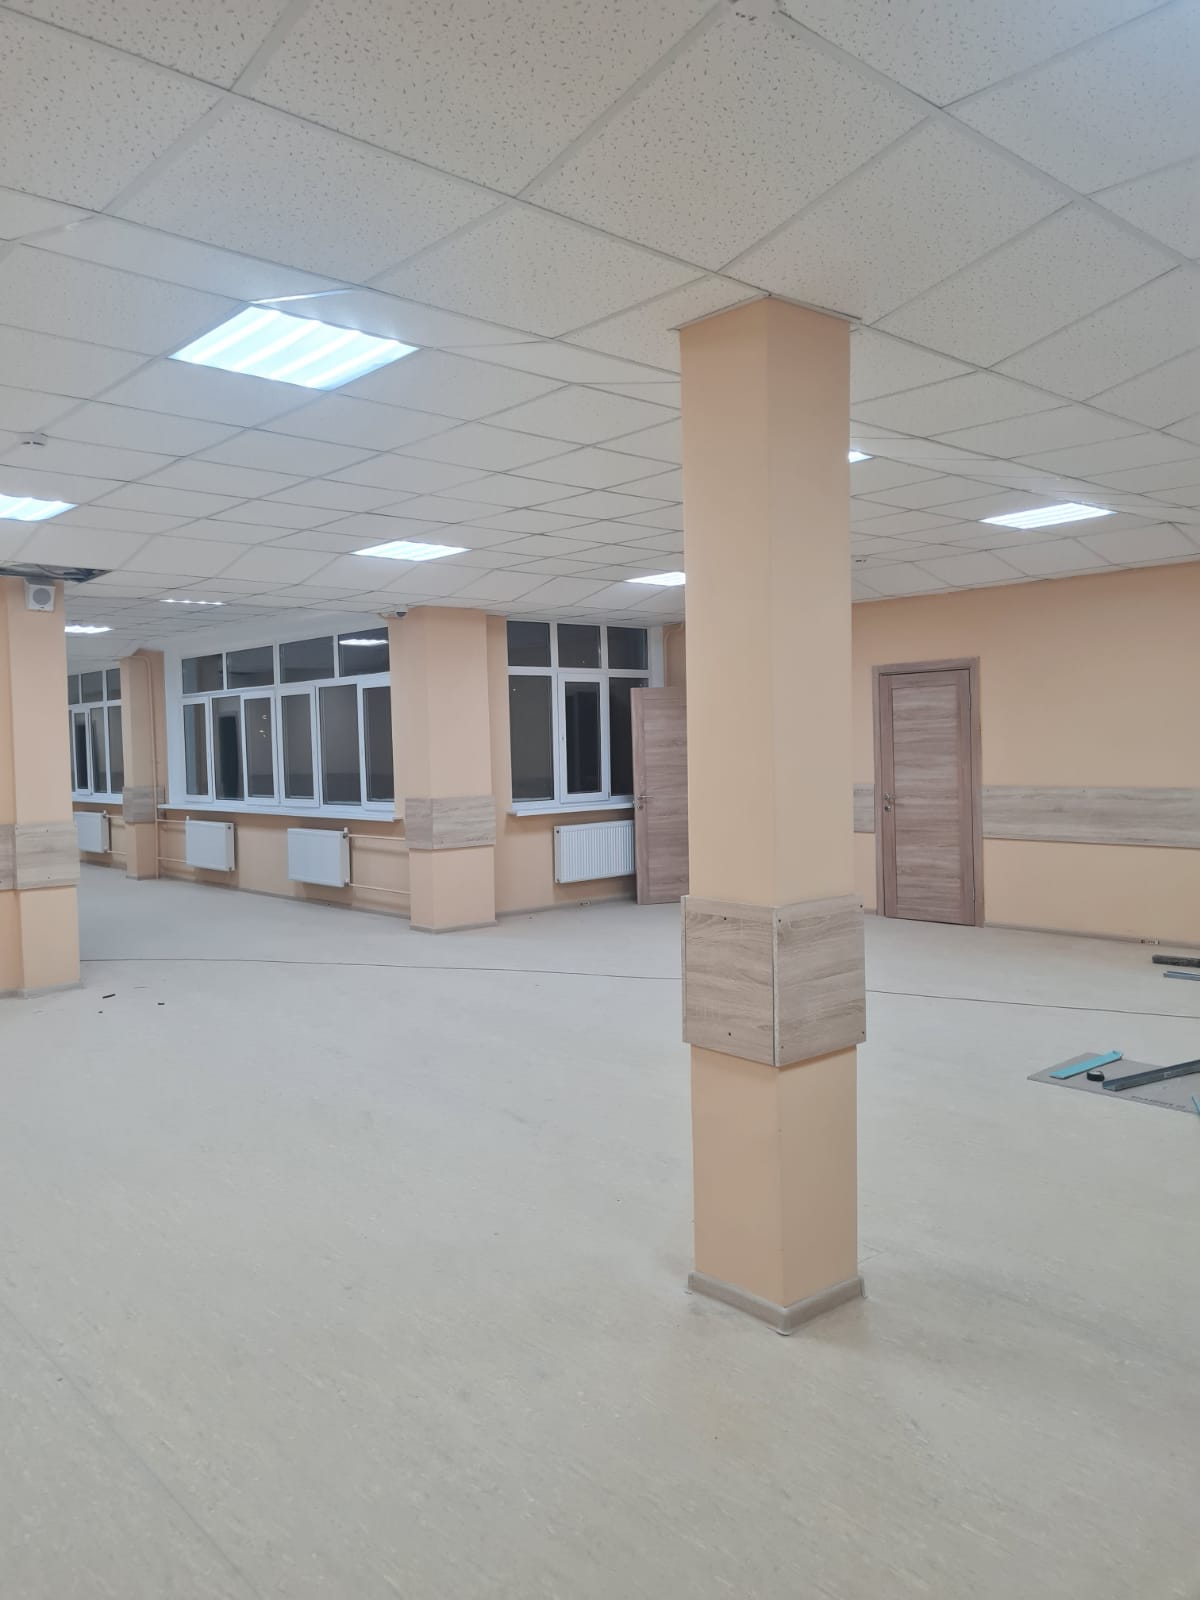 Поставка электротехнической продукции, кабеля и ВРУ для капитального ремонта гимназии в г. Ногинск 2021г